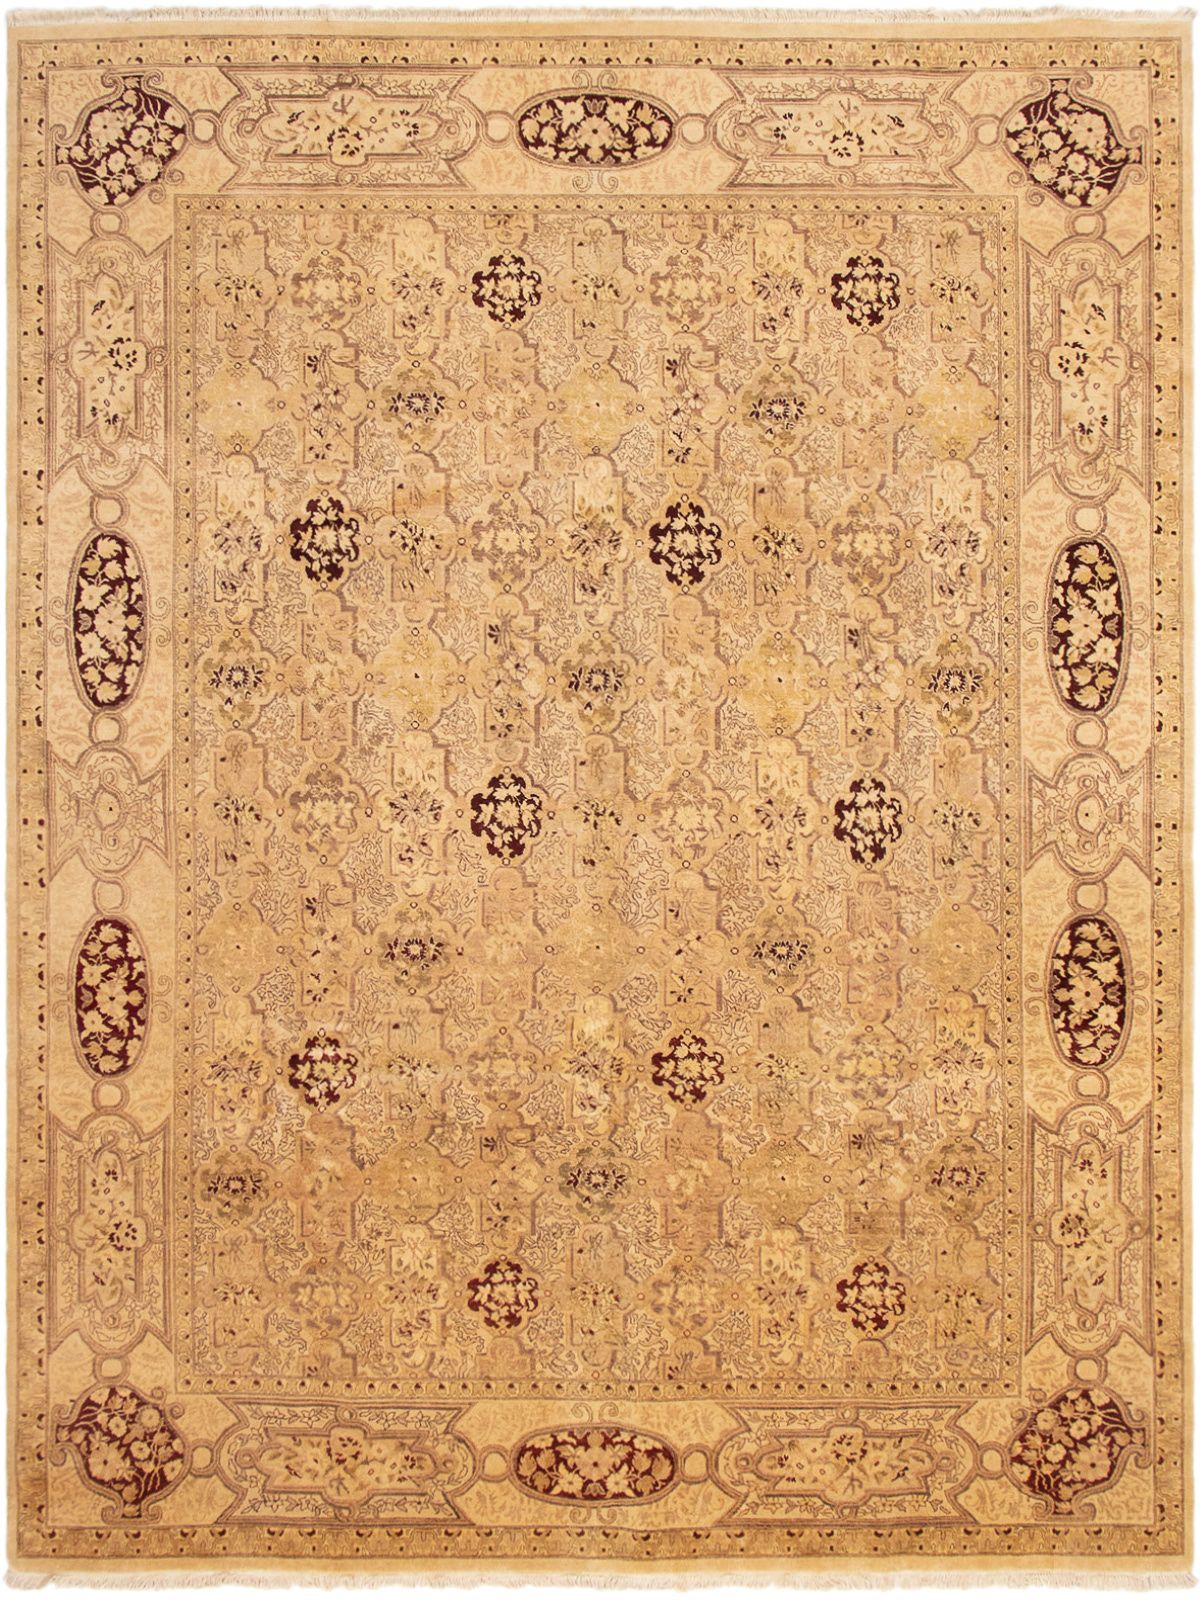 Hand-knotted Peshawar Oushak Ivory Wool Rug 9'1" x 11'10" Size: 9'1" x 11'10"  